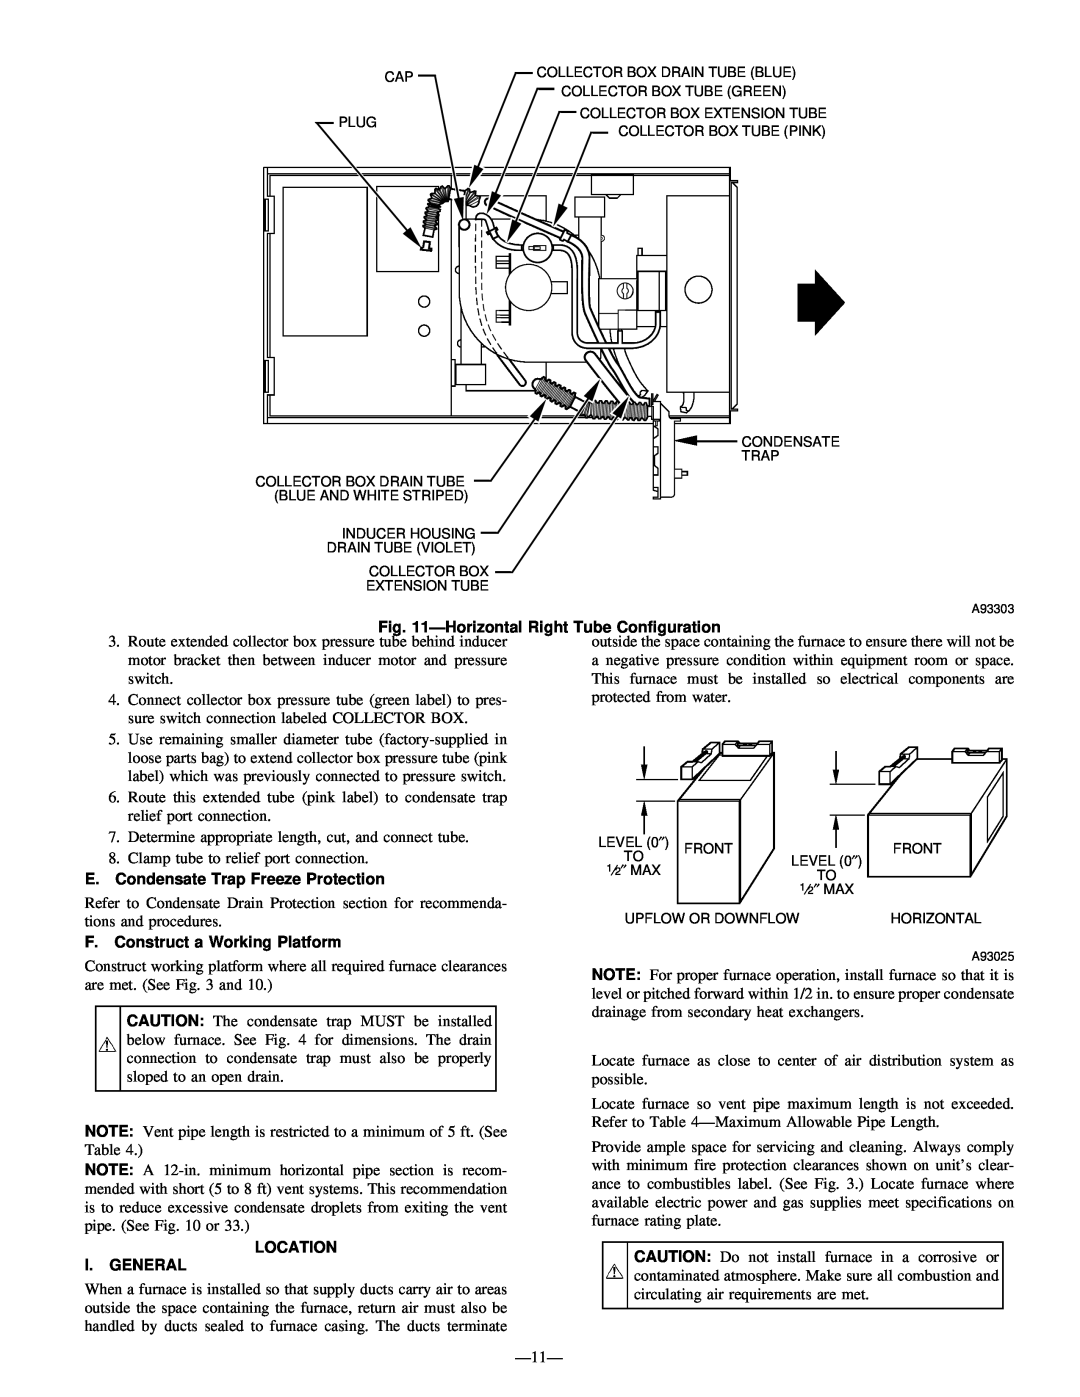 Bryant 345MAV instruction manual Ð11Ð 